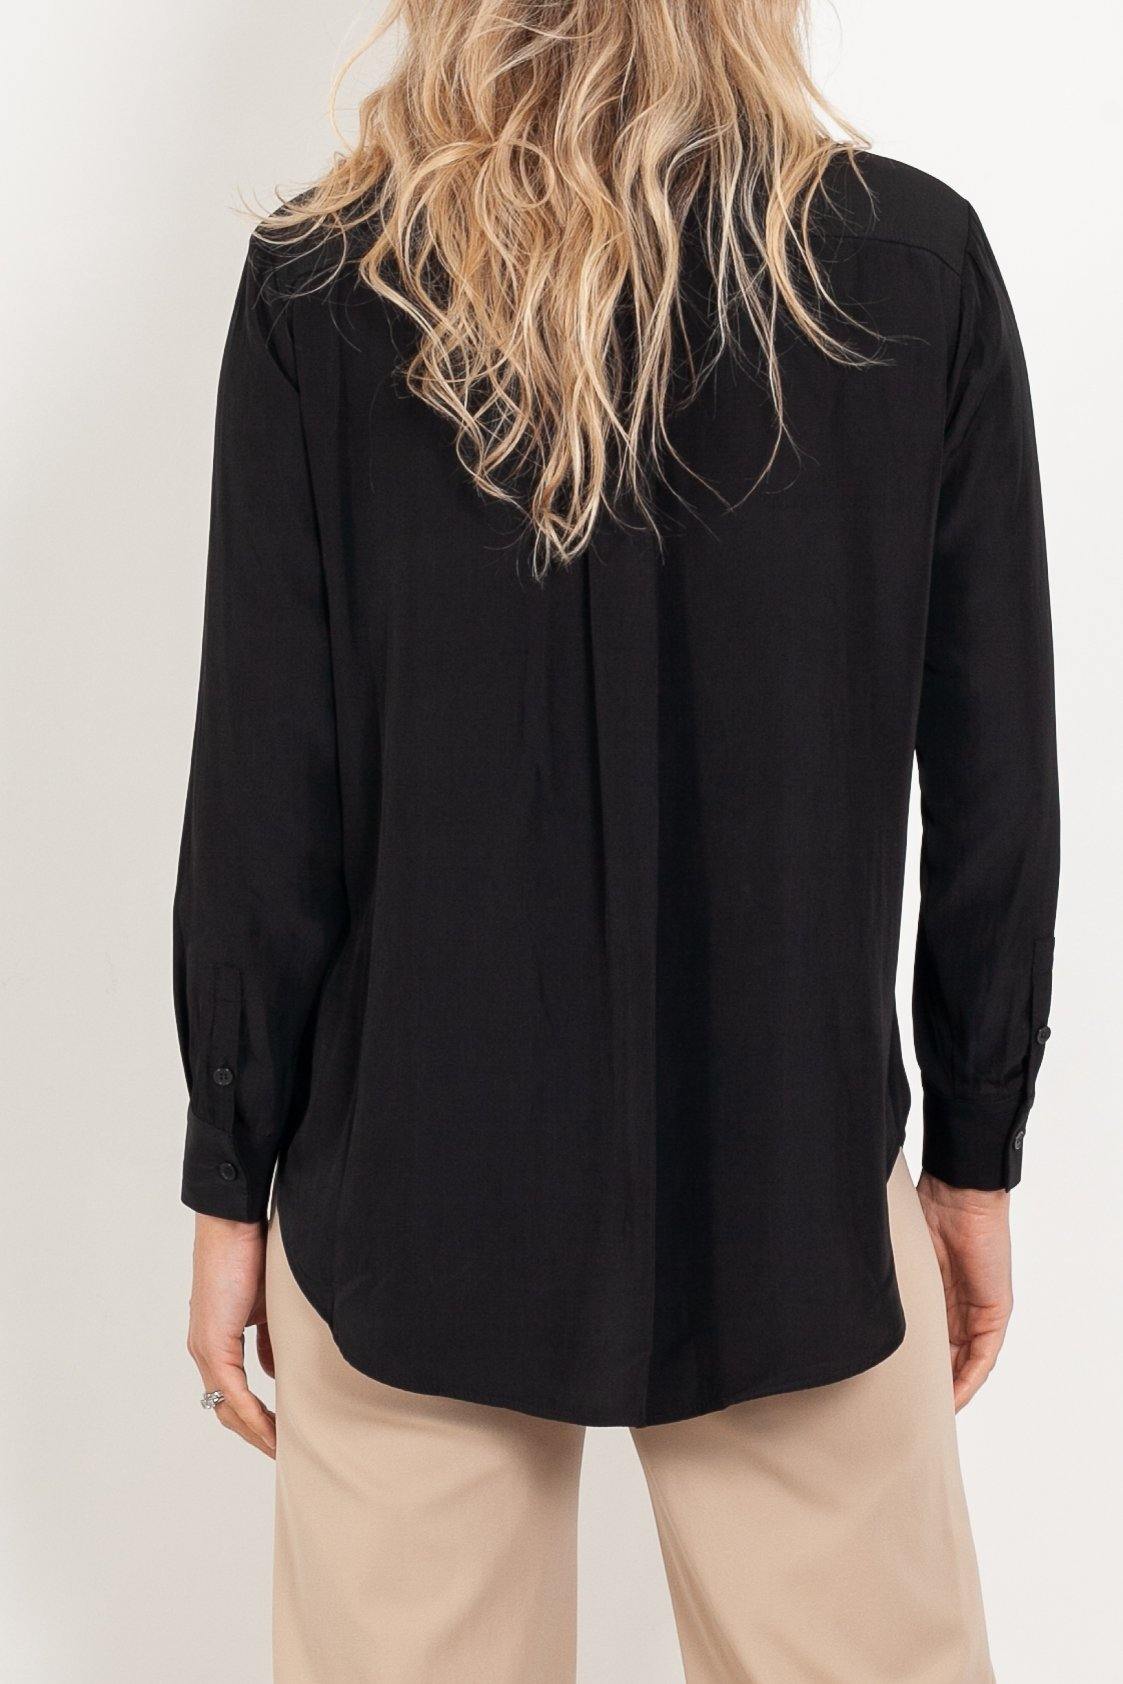 Mela Purdie Single Pocket Shirt Mache - Impulse Boutique#colour_black